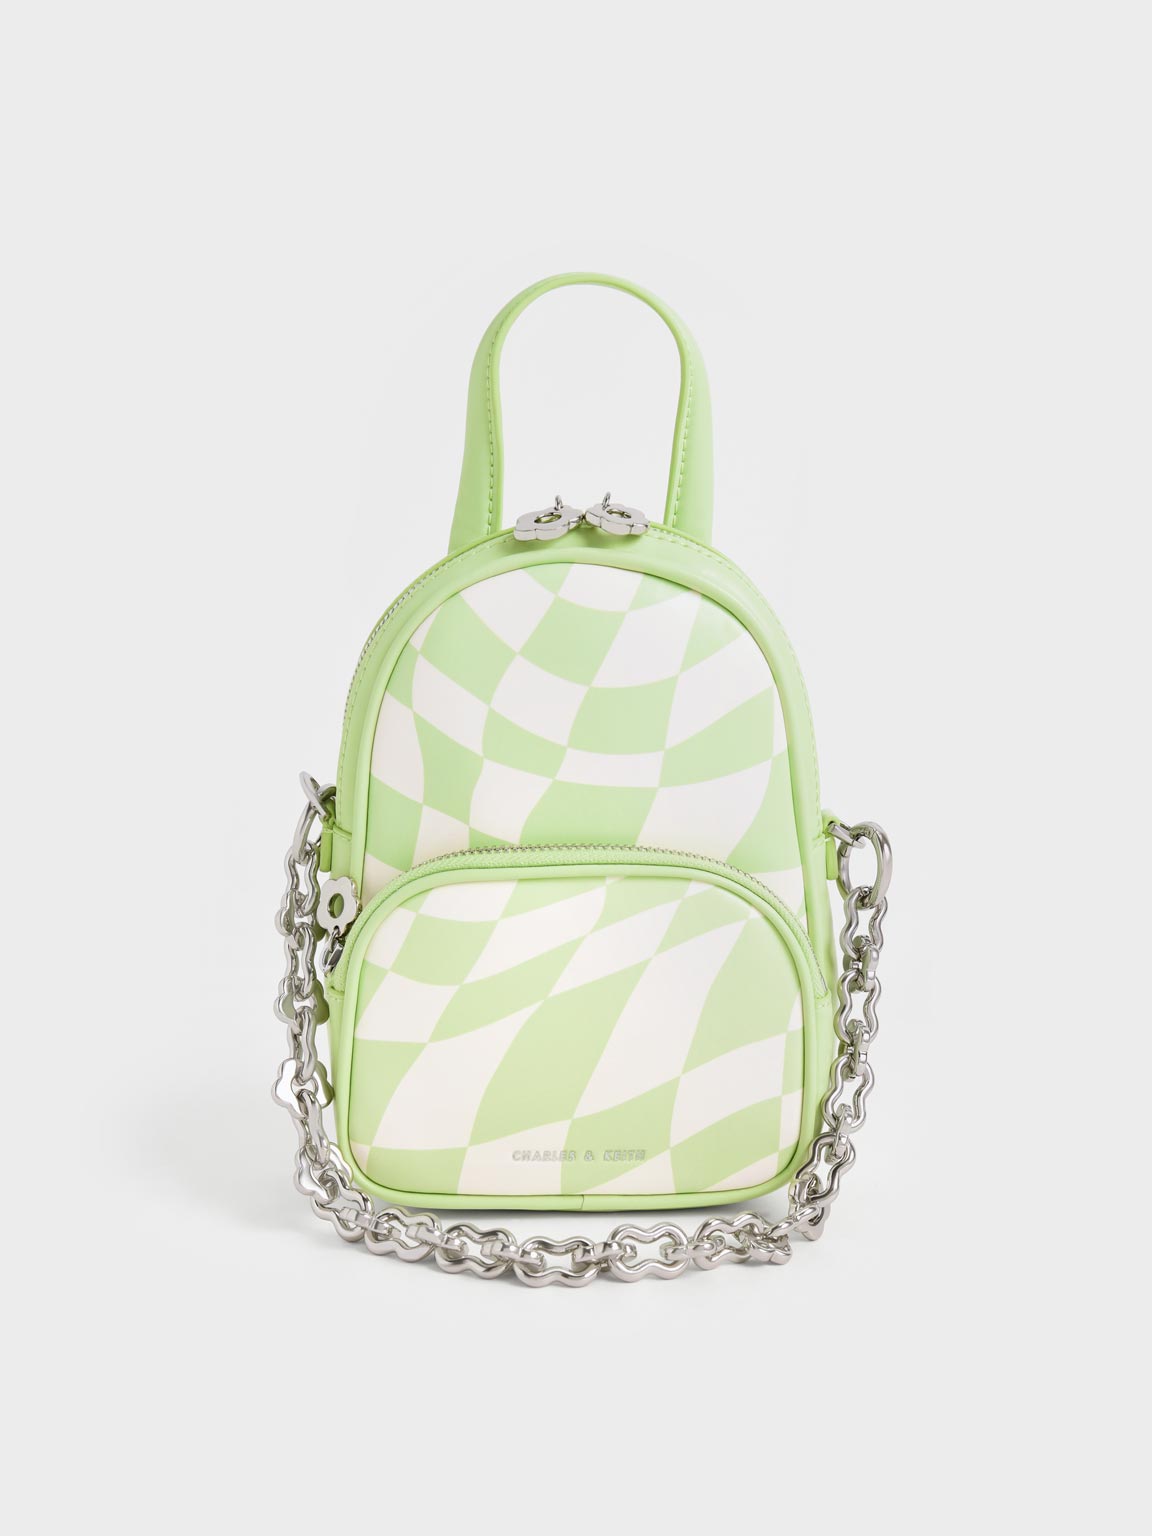 Mint Green Minka Checkered Double Pocket Crossbody Bag | CHARLES & KEITH